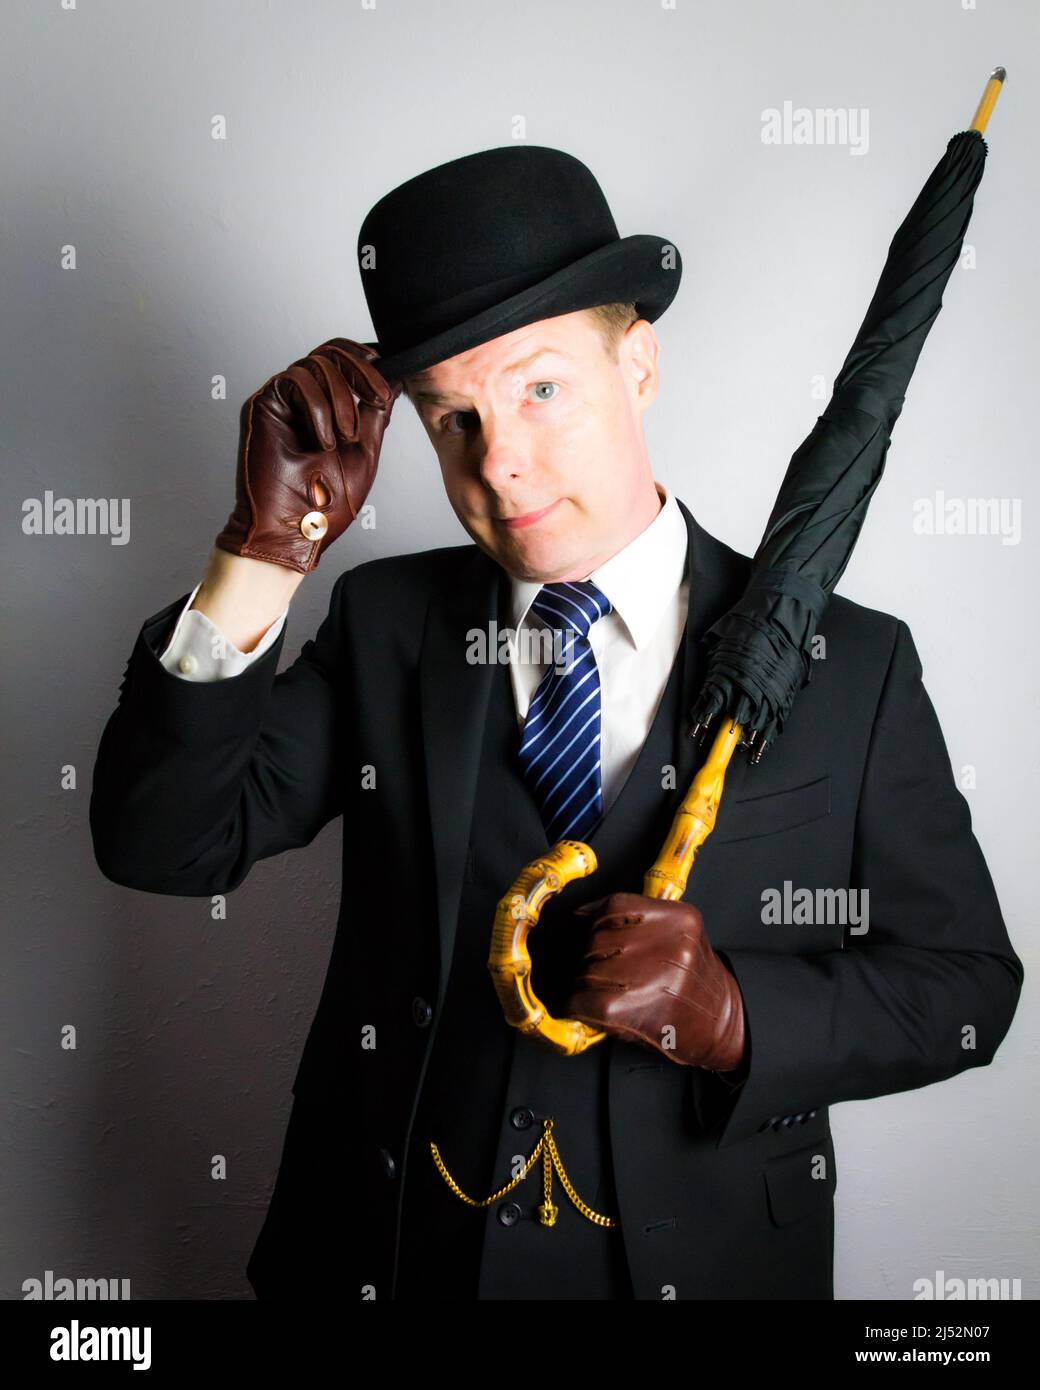 Porträt eines britischen Geschäftsmannes in Dark Suit Holding Regenschirm und höflich doffing Bowler Hut. Vintage Style des eleganten englischen Gentleman. Stockfoto